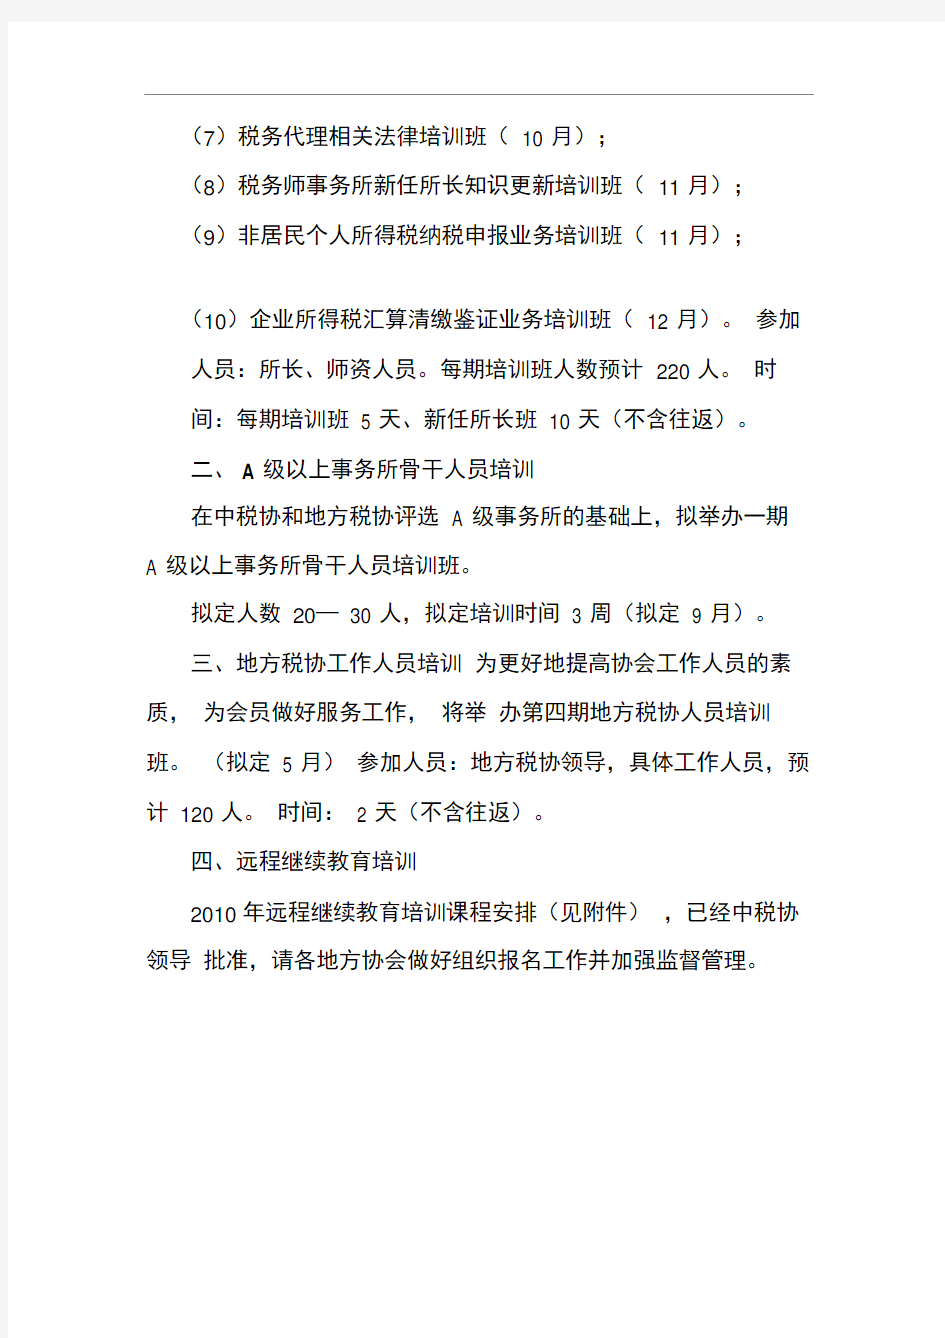 中国注册税务师协会2010年继续教育培训计划